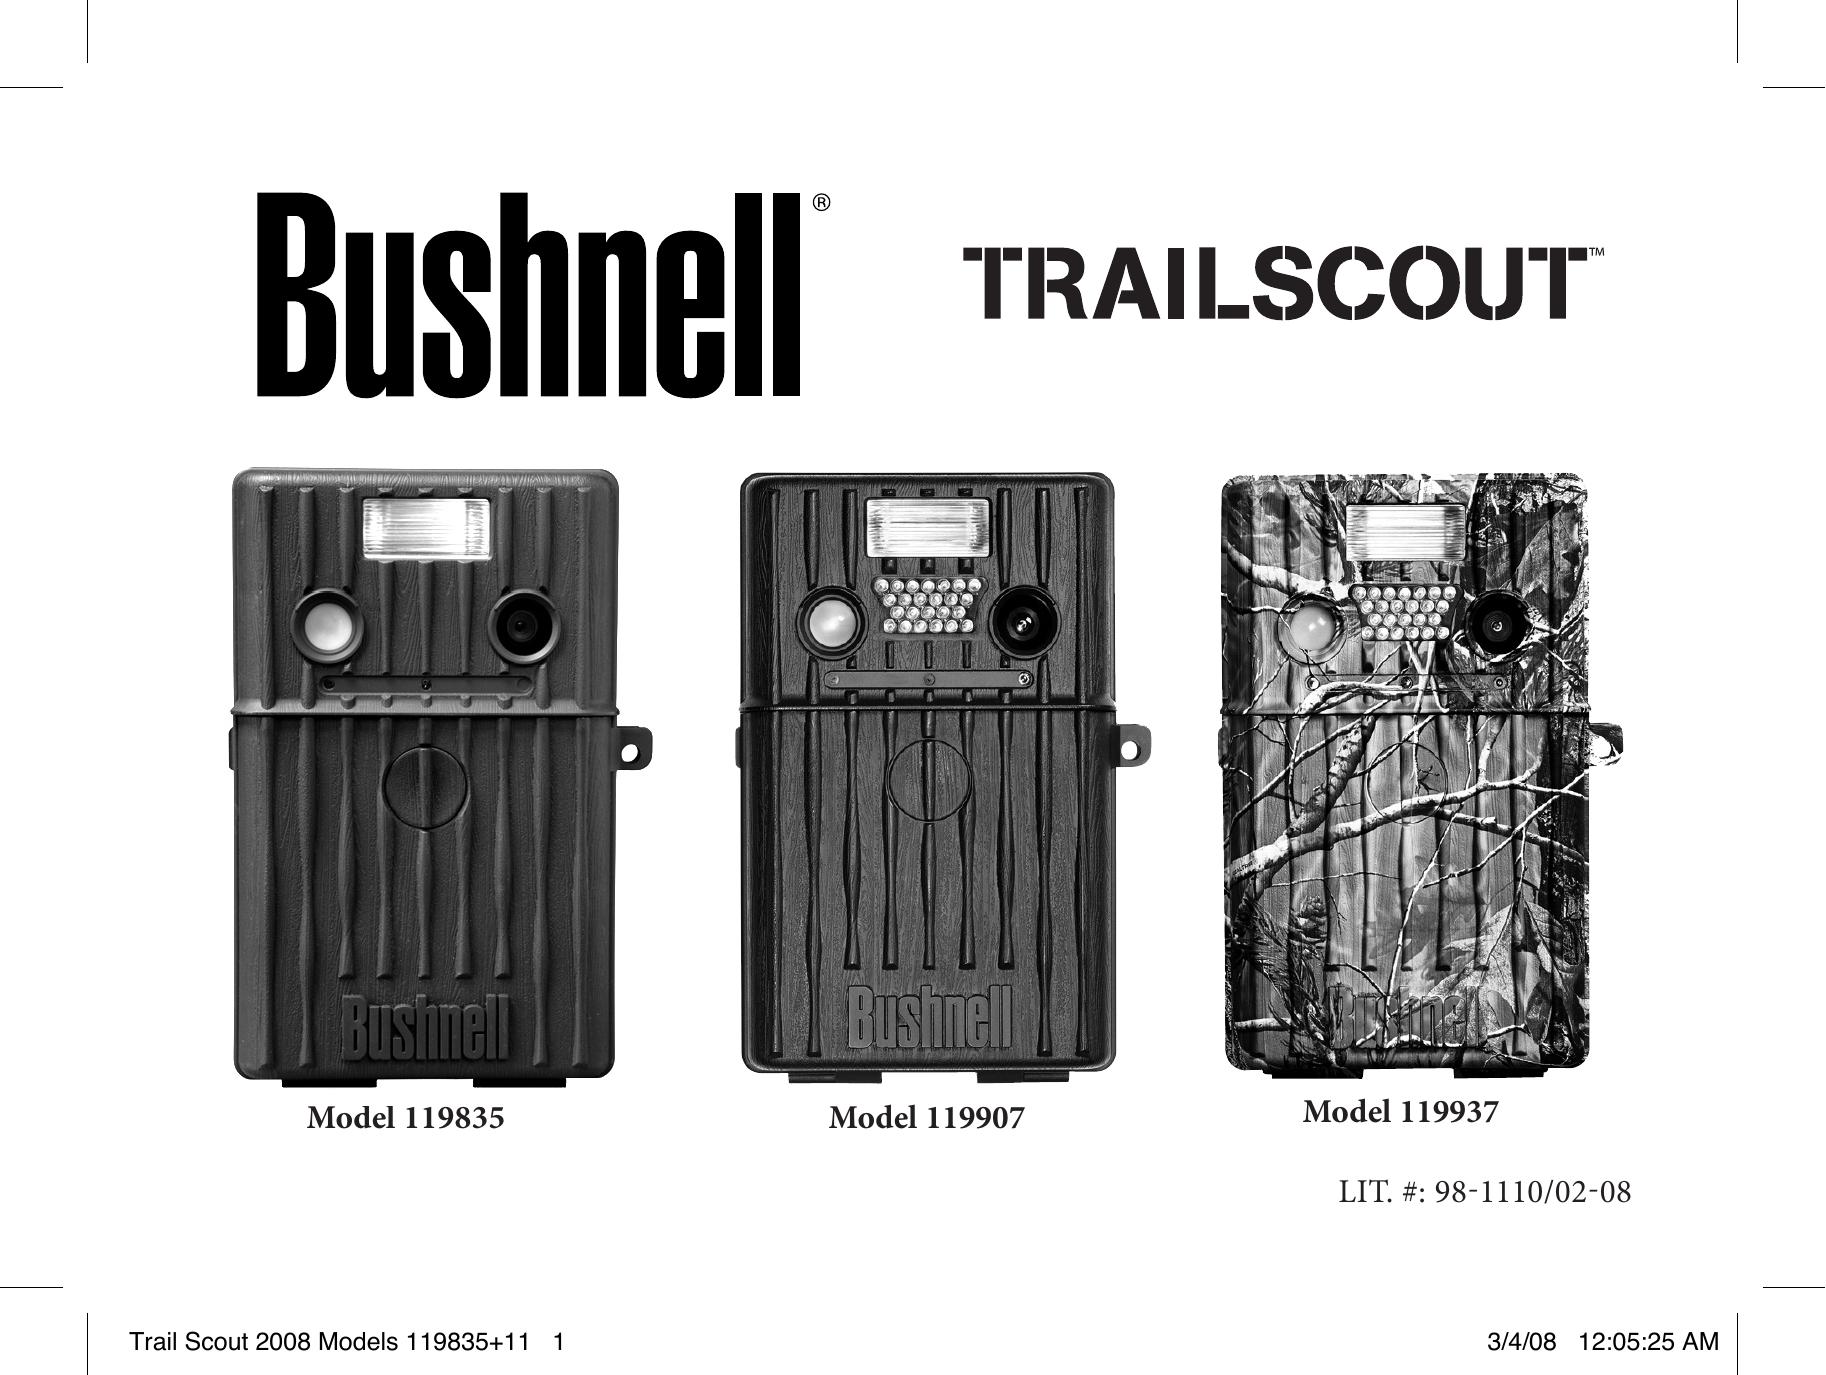 Bushnell 119907 Digital Camera User Manual